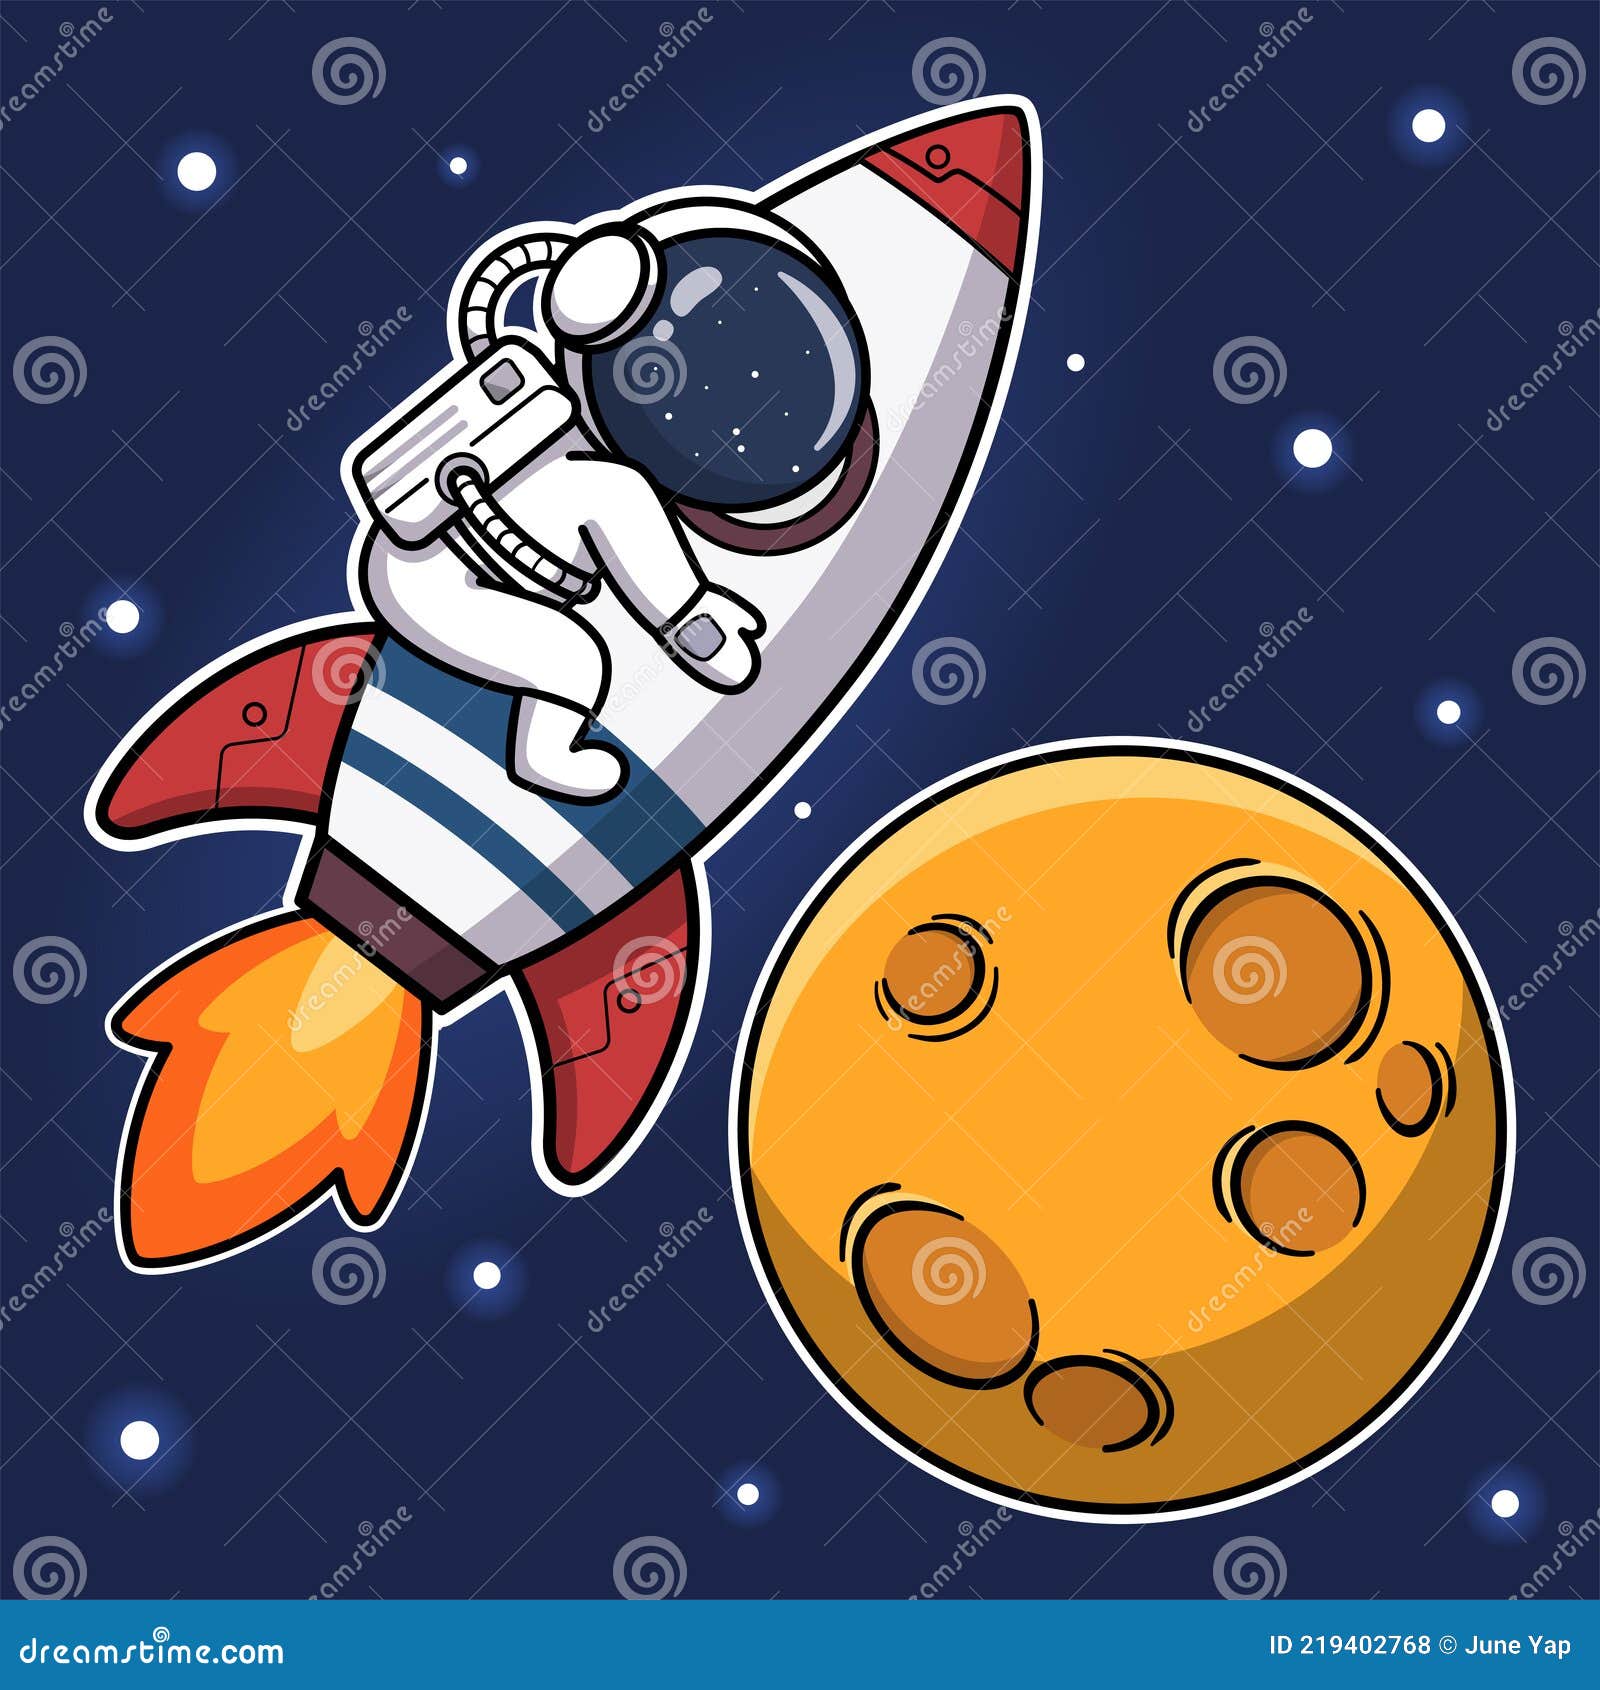 Premium Vector, Cute alien holding moon balloon cartoon illustration